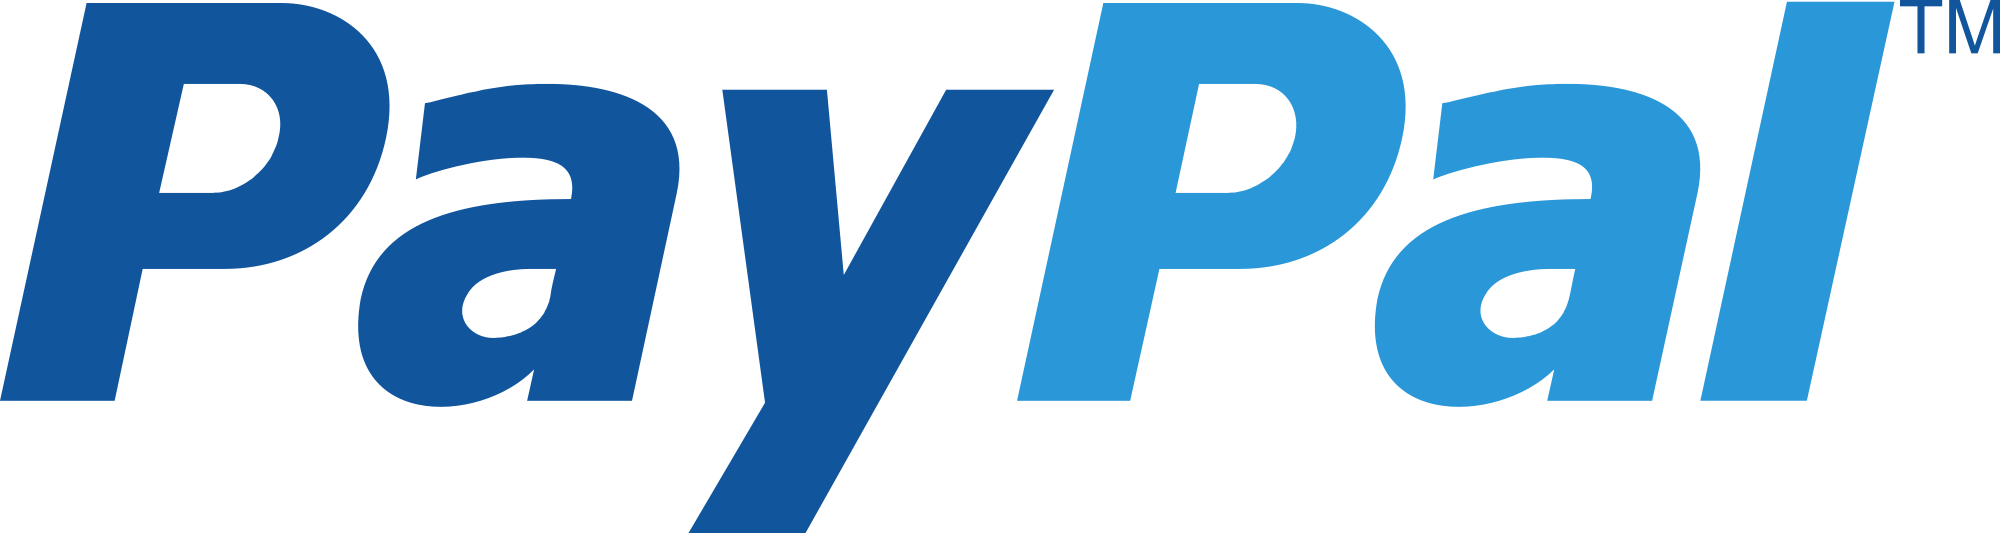 paypal-logo-png - URBAN TOOL